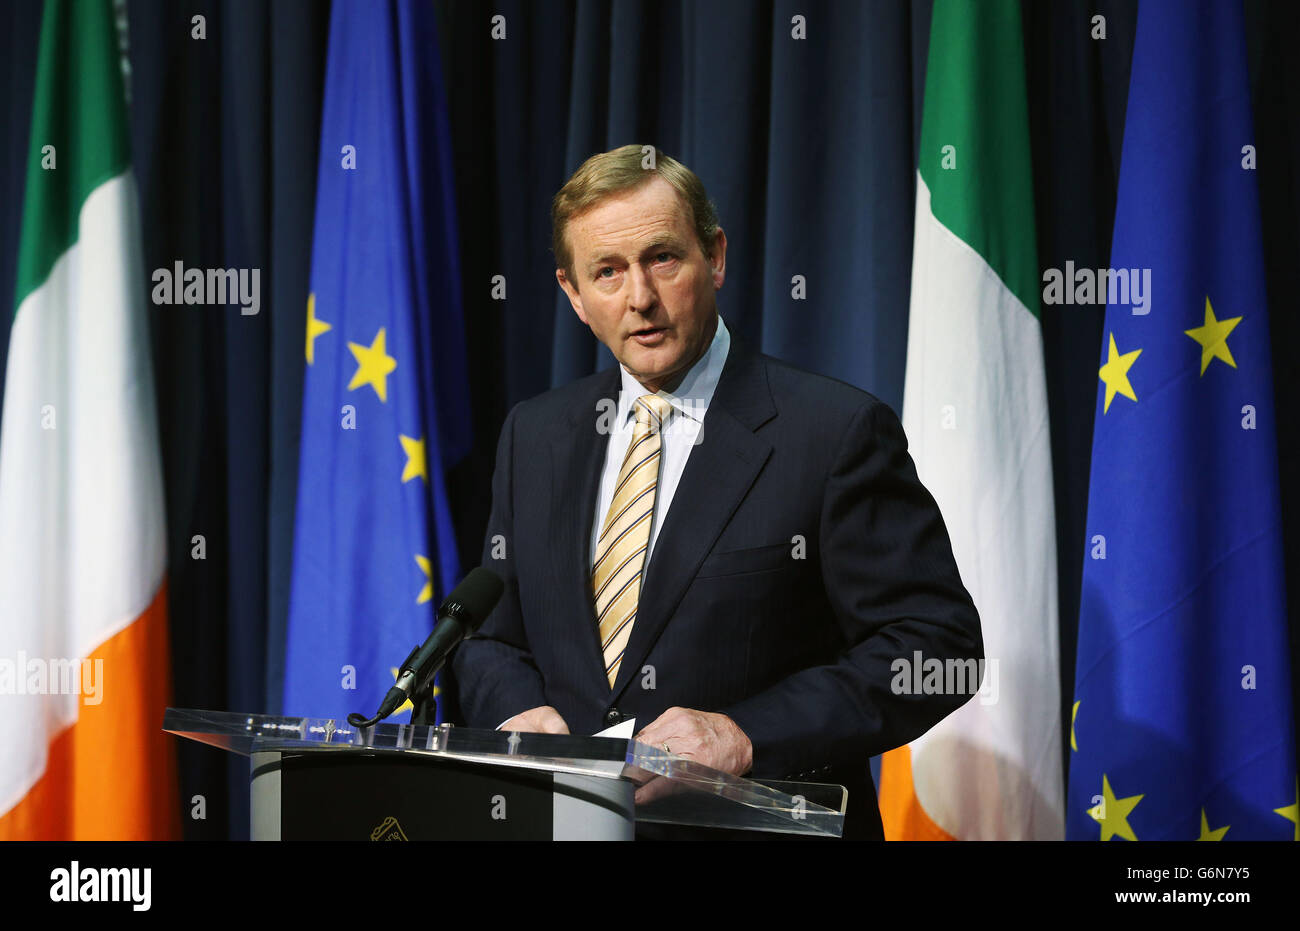 Premier ministre irlandais Enda Kenny prend la parole lors d'une conférence de presse à Dublin, après avoir voté la Grande-Bretagne à quitter l'Union européenne dans un référendum historique qui a jeté dans le désarroi politique de Westminster et a envoyé le livre tumbling sur les marchés mondiaux. Banque D'Images